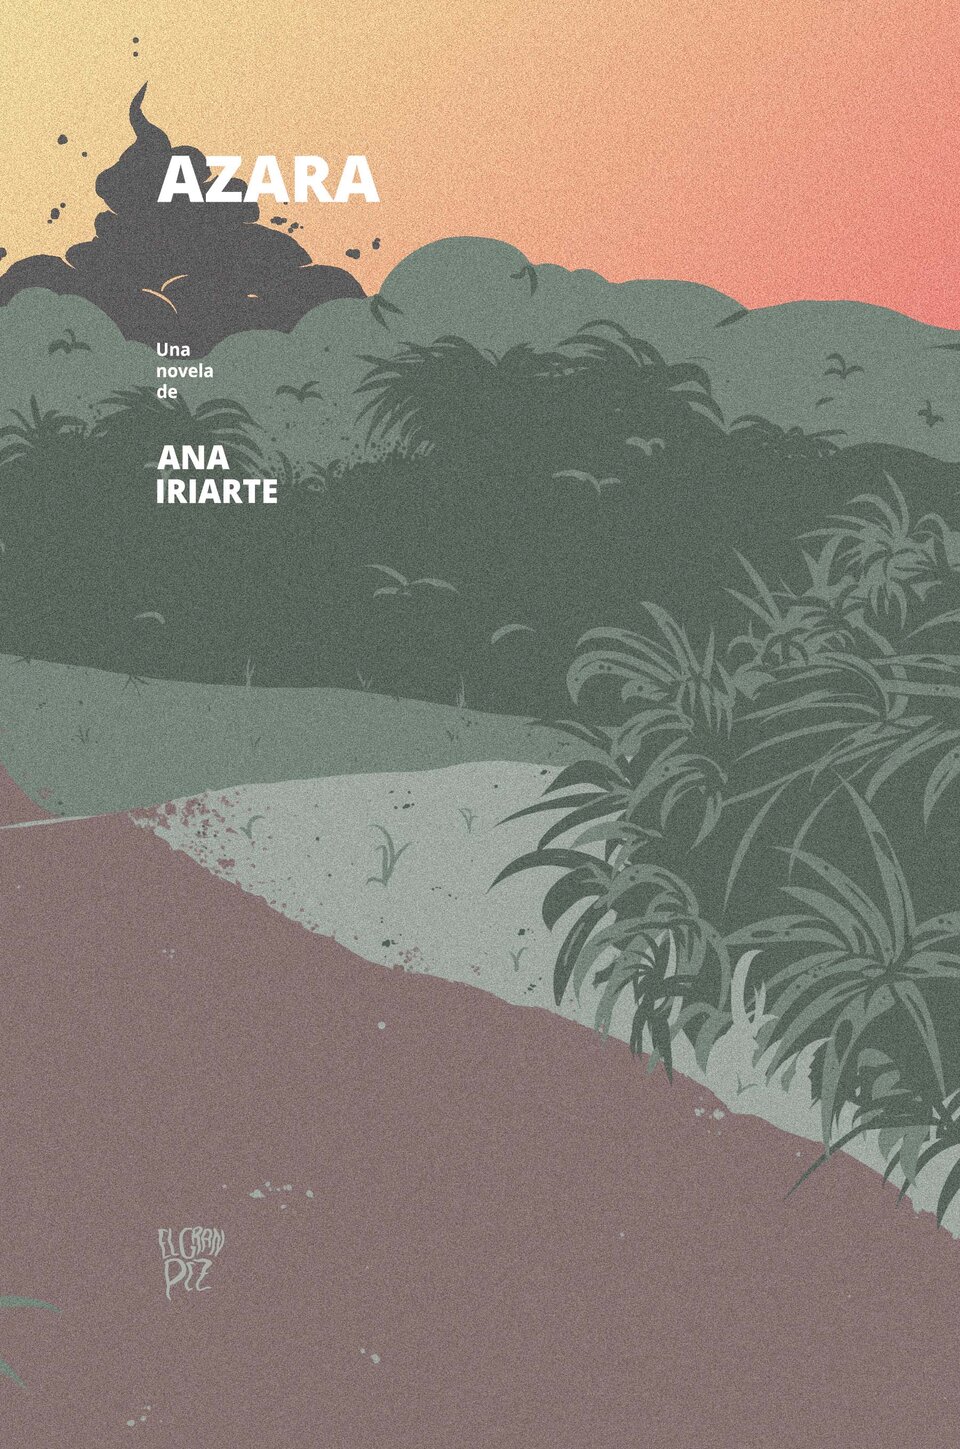 azara, la primera novela de ana iriarte, un thriller de inmigrantes ucranianos en la selva misionera